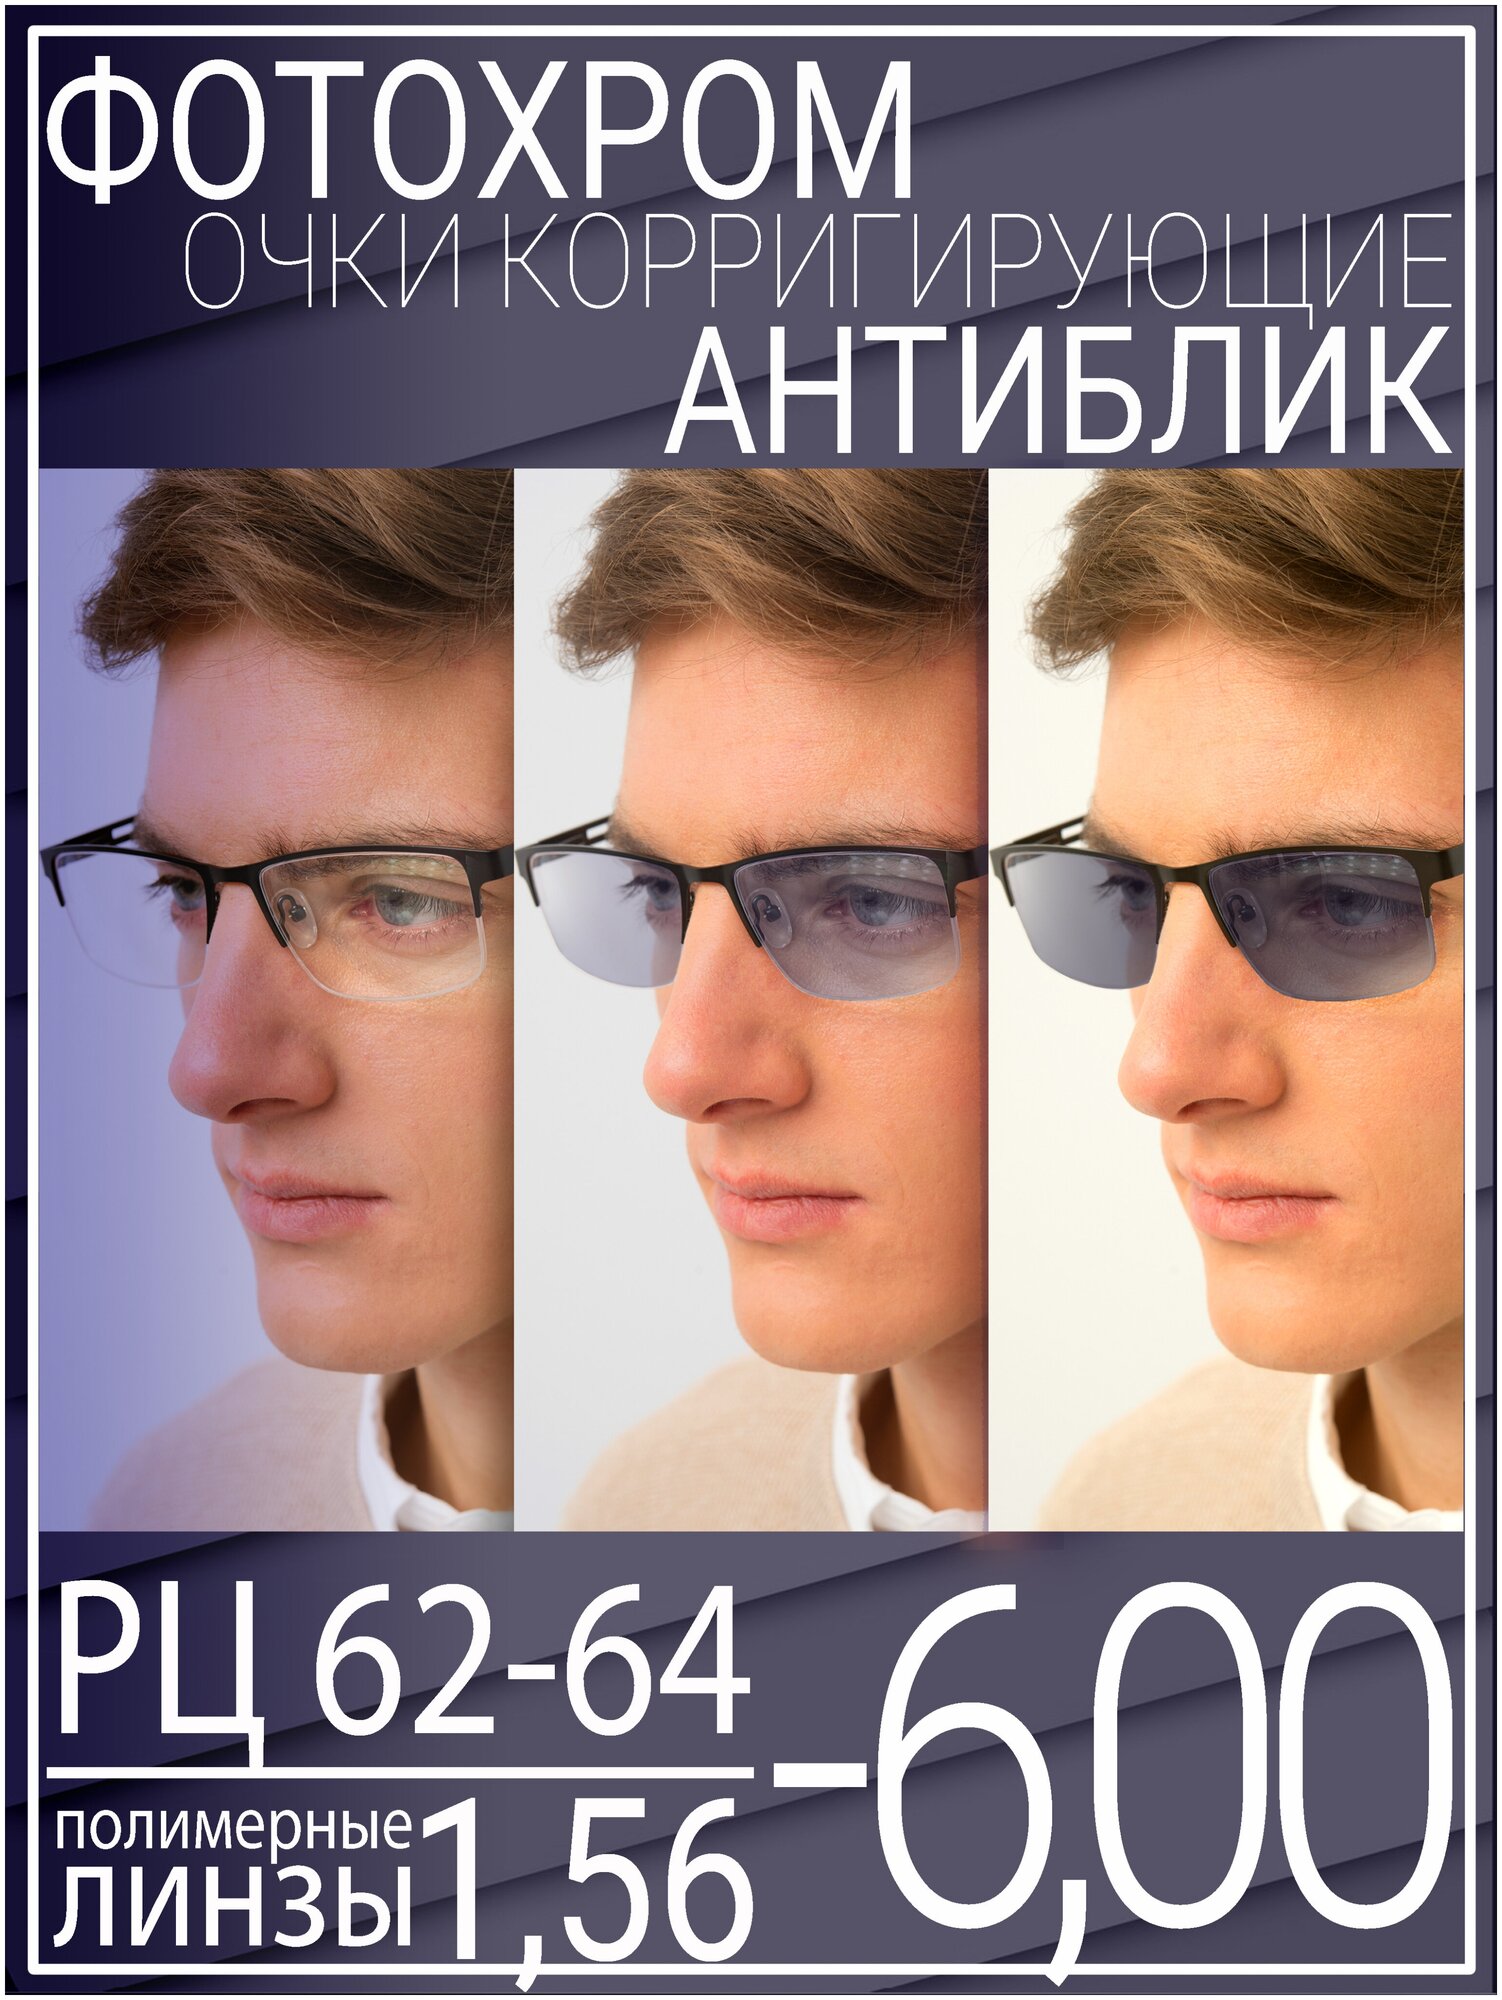 Готовые очки для зрения с фотохромной линзой -6.0 РЦ 62-64 / Очки корригирующие мужские